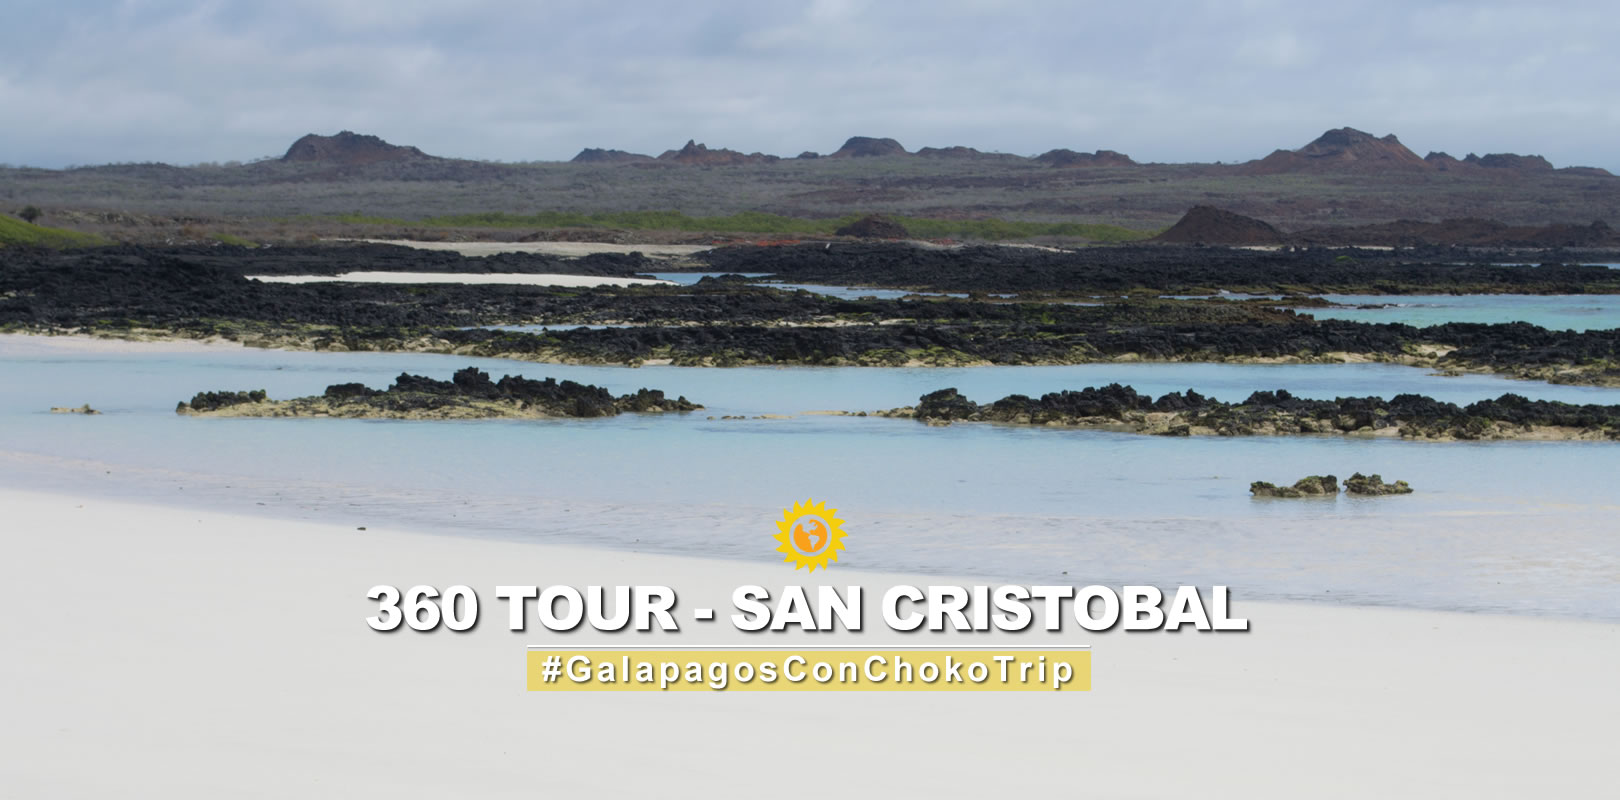 360 Tour Galapagos Islands